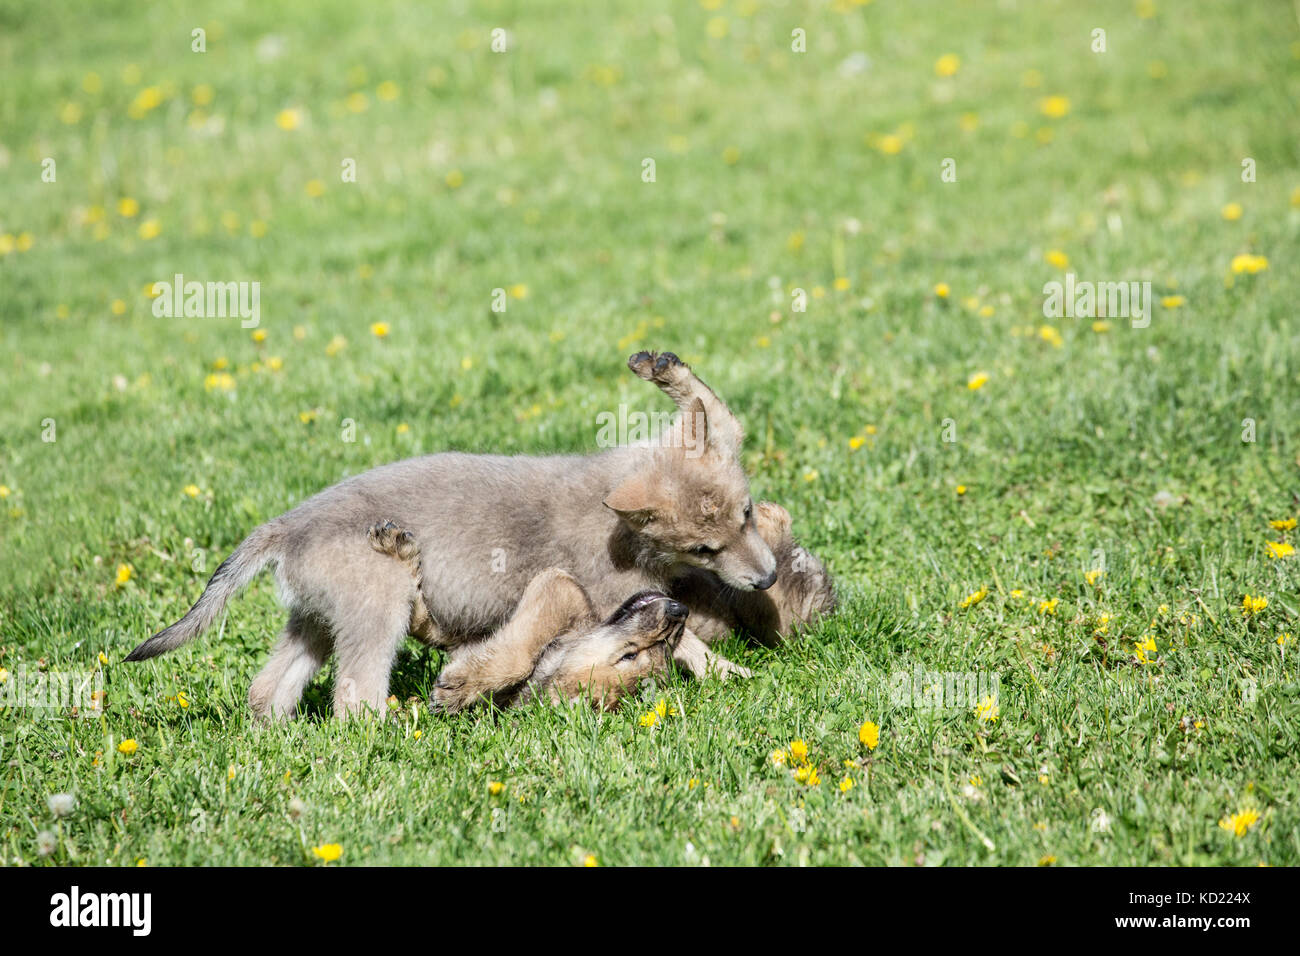 Camada de crías de lobos grises jugar combates en una pradera, cerca de Bozeman, Montana, EE.UU. Animales cautivos. Foto de stock